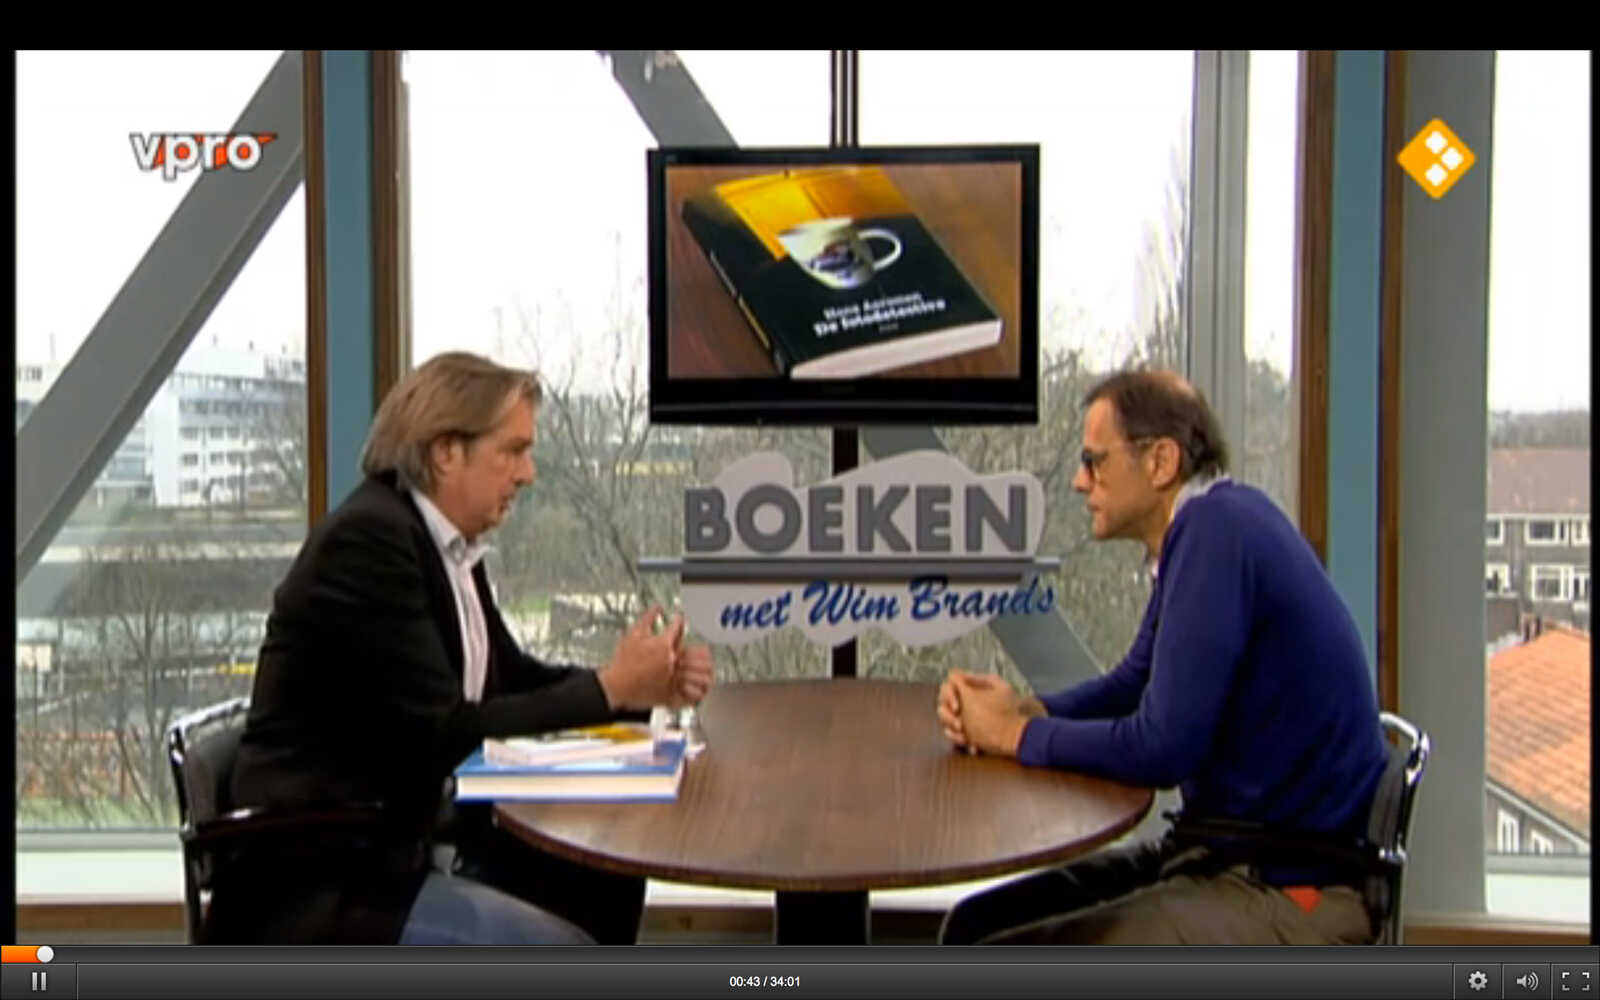 Fotodetective-Screenshot-Wim-Brands-VPRO-Boeken.jpg